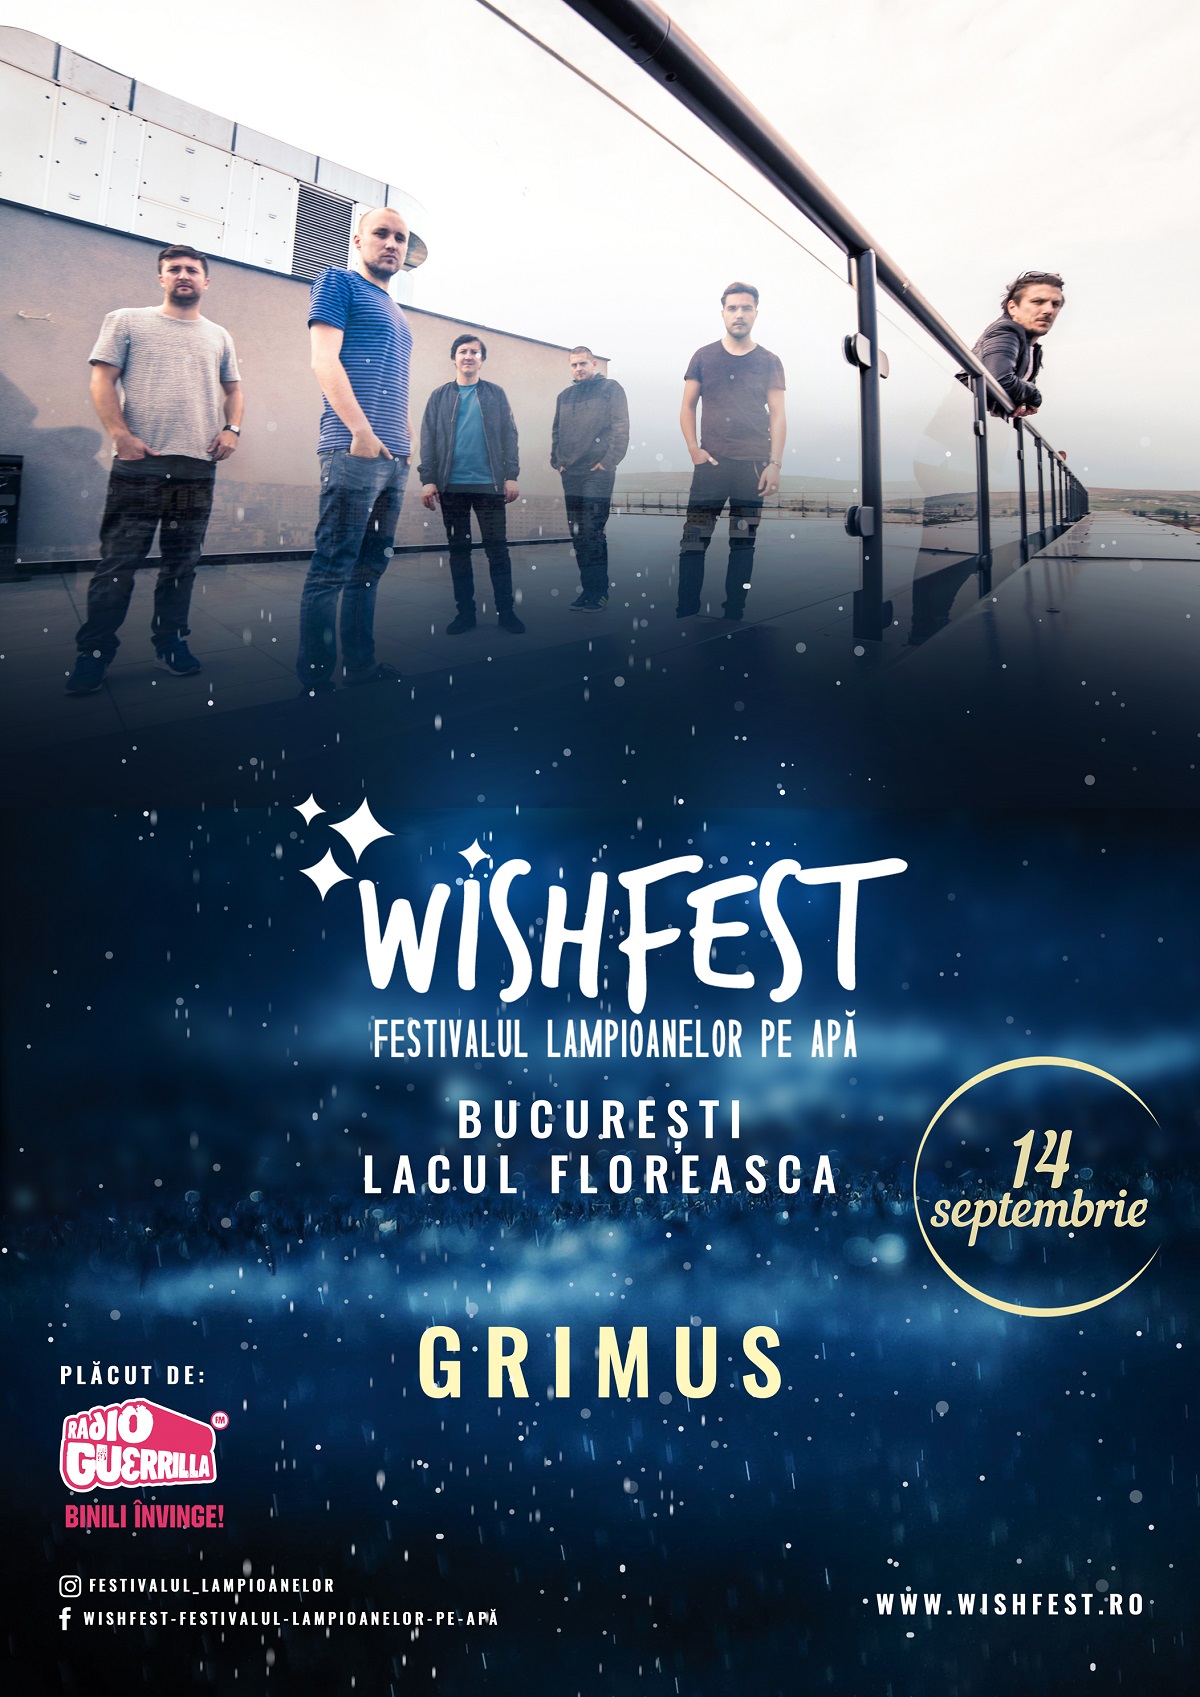 WishFest, primul festival dedicat lampioanelor pe apa, in Bucuresti, intre 14 – 15 septembrie